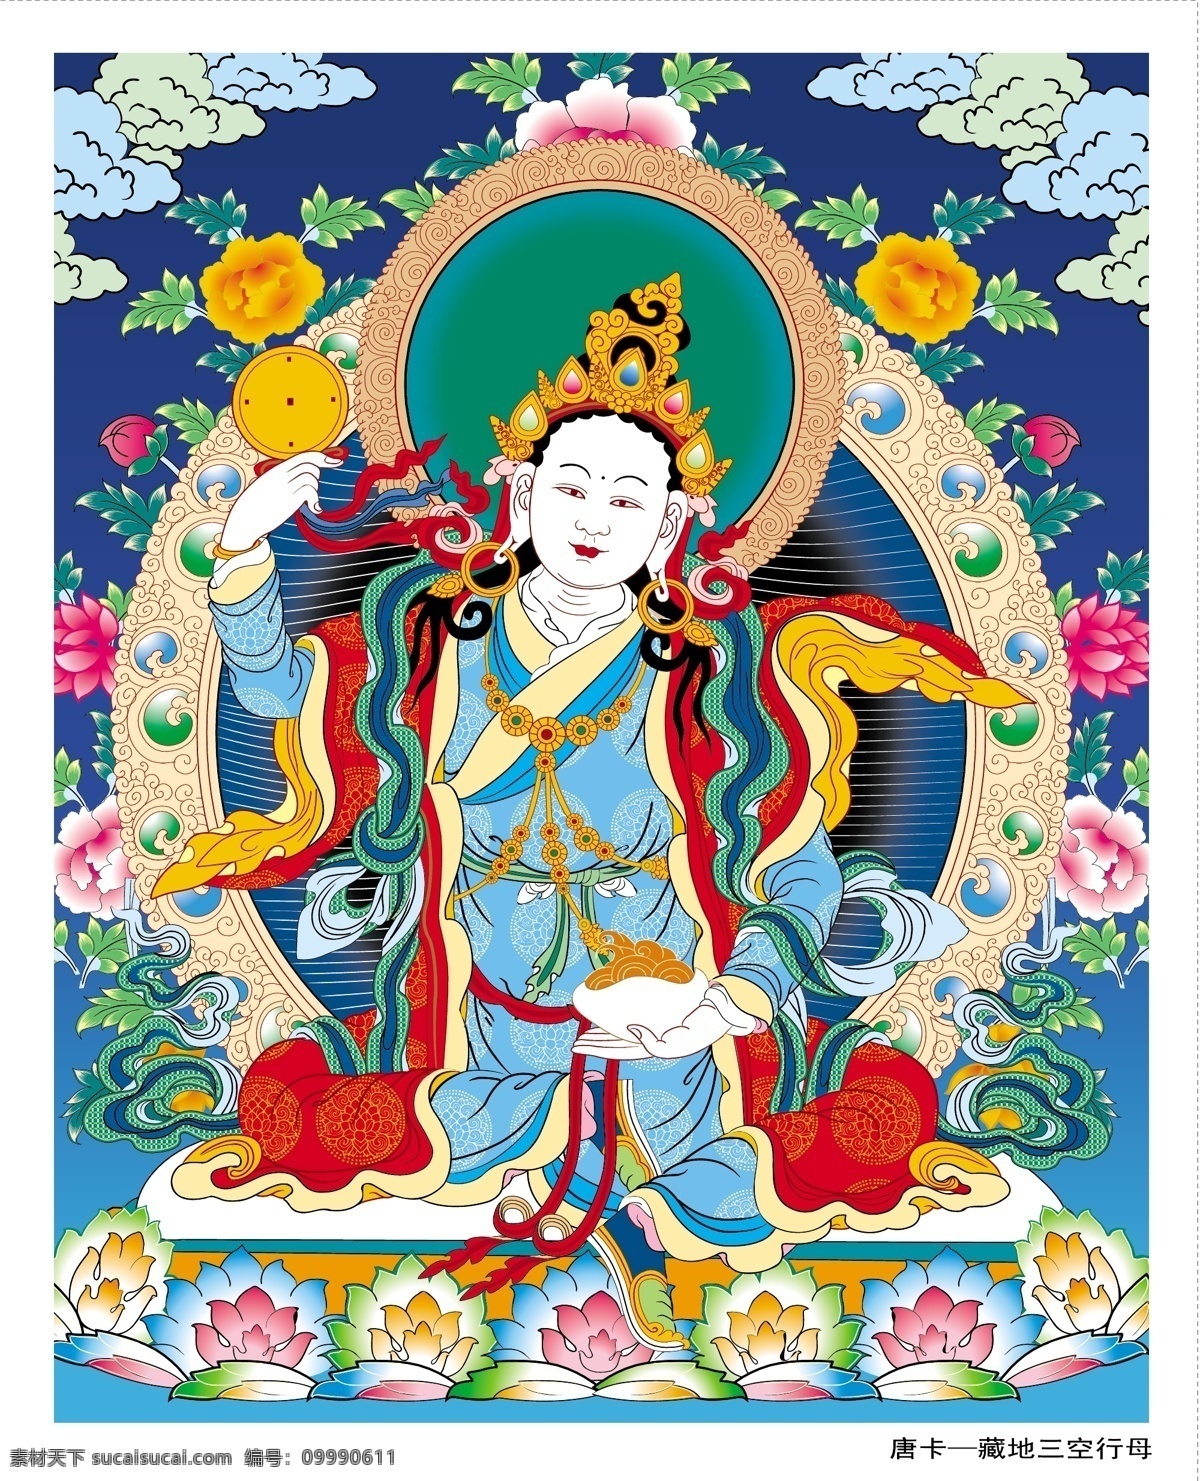 西藏 唐卡 莲花 三 排空 妈妈 矢量 藏传佛教 传统 敦煌 佛 古典 荷花 花 宗教 藏族 母亲 矢量图 其他矢量图